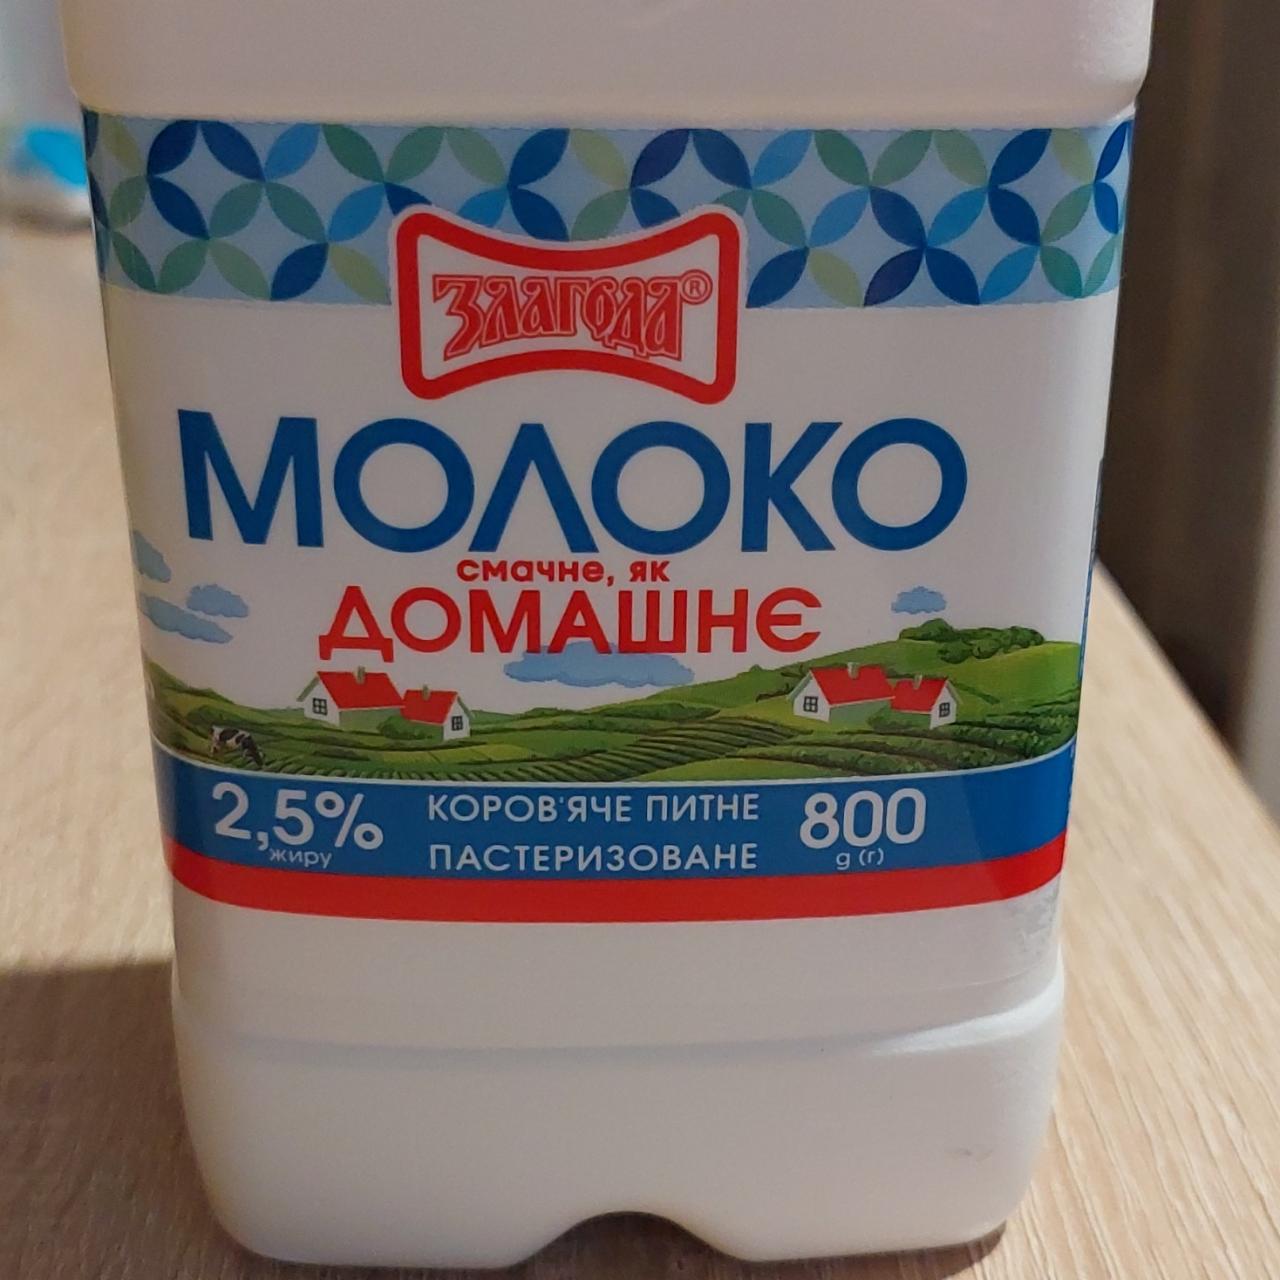 Фото - Молоко 2.5% Злагода